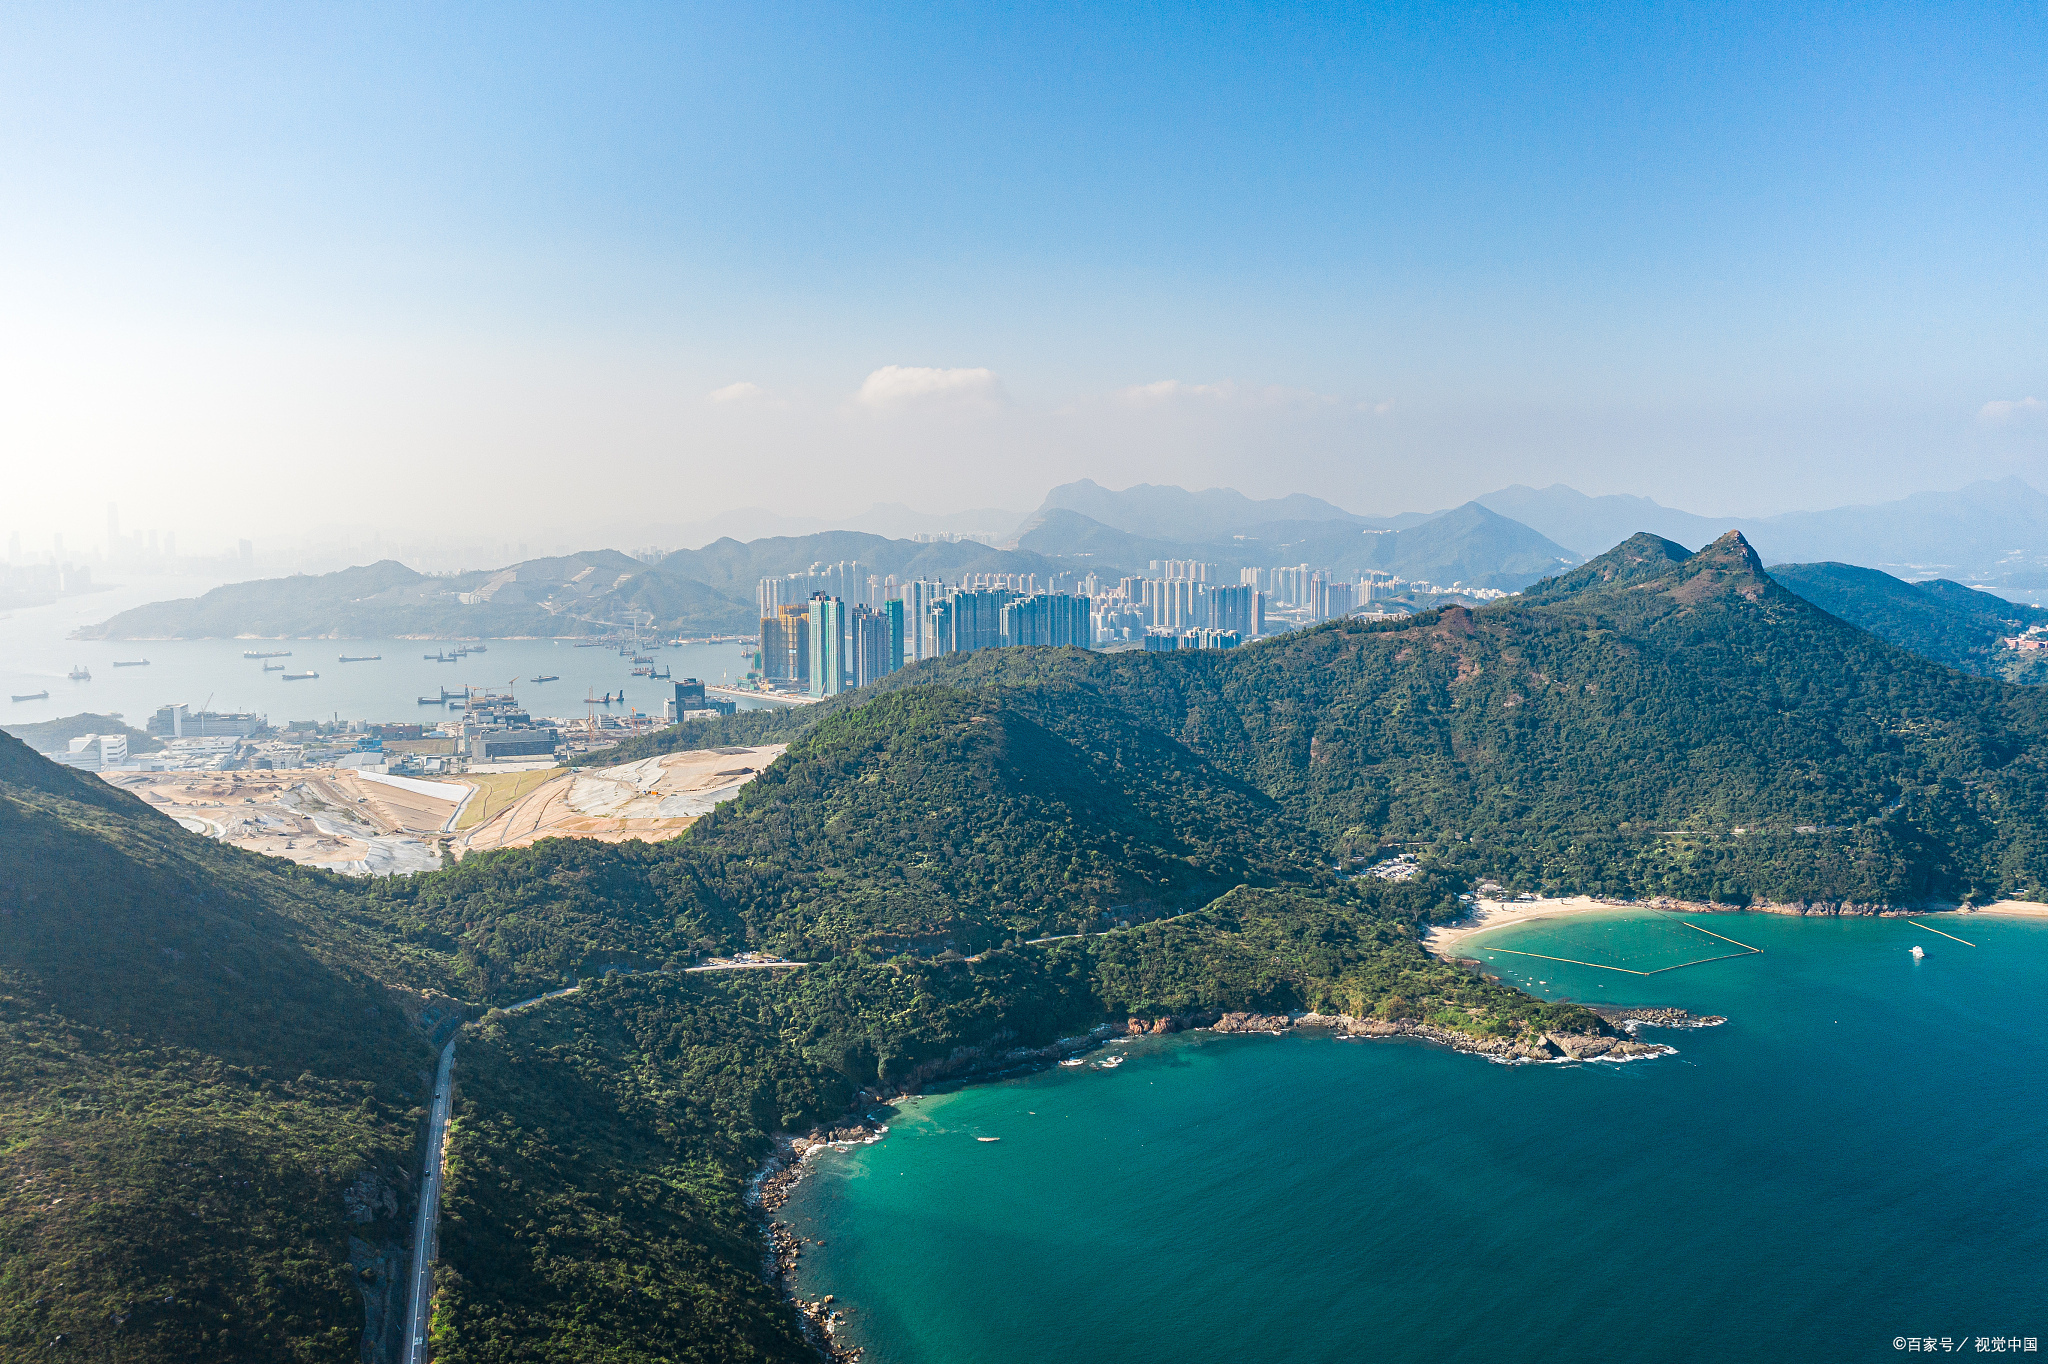 总之,大屿山是香港一个非常美丽的景点,那里的人民热情友好,自然环境